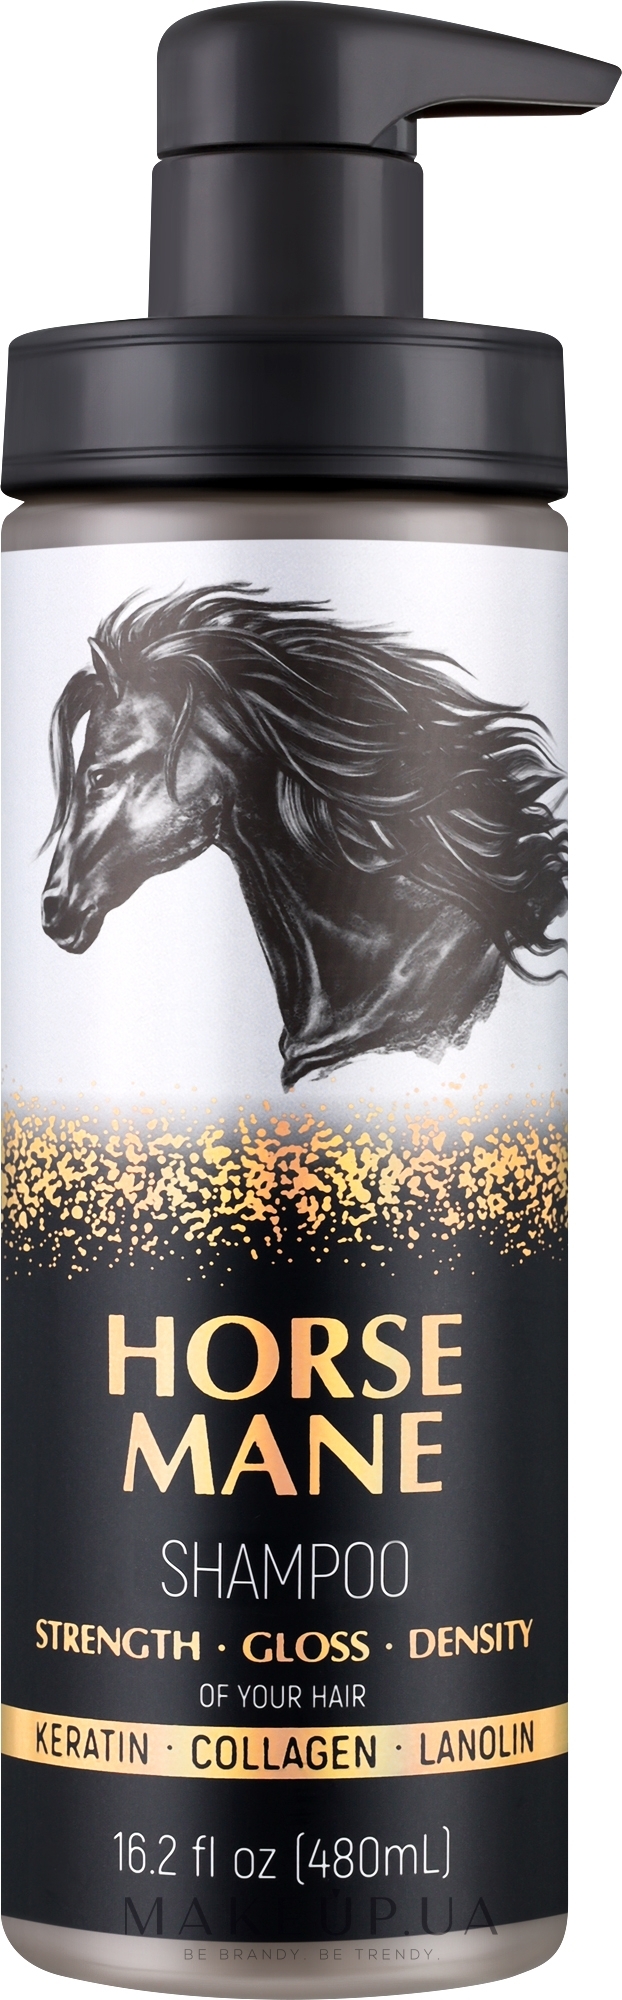 Шампунь для волос - Horse Mane Strength Gloss Density Shampoo — фото 480ml